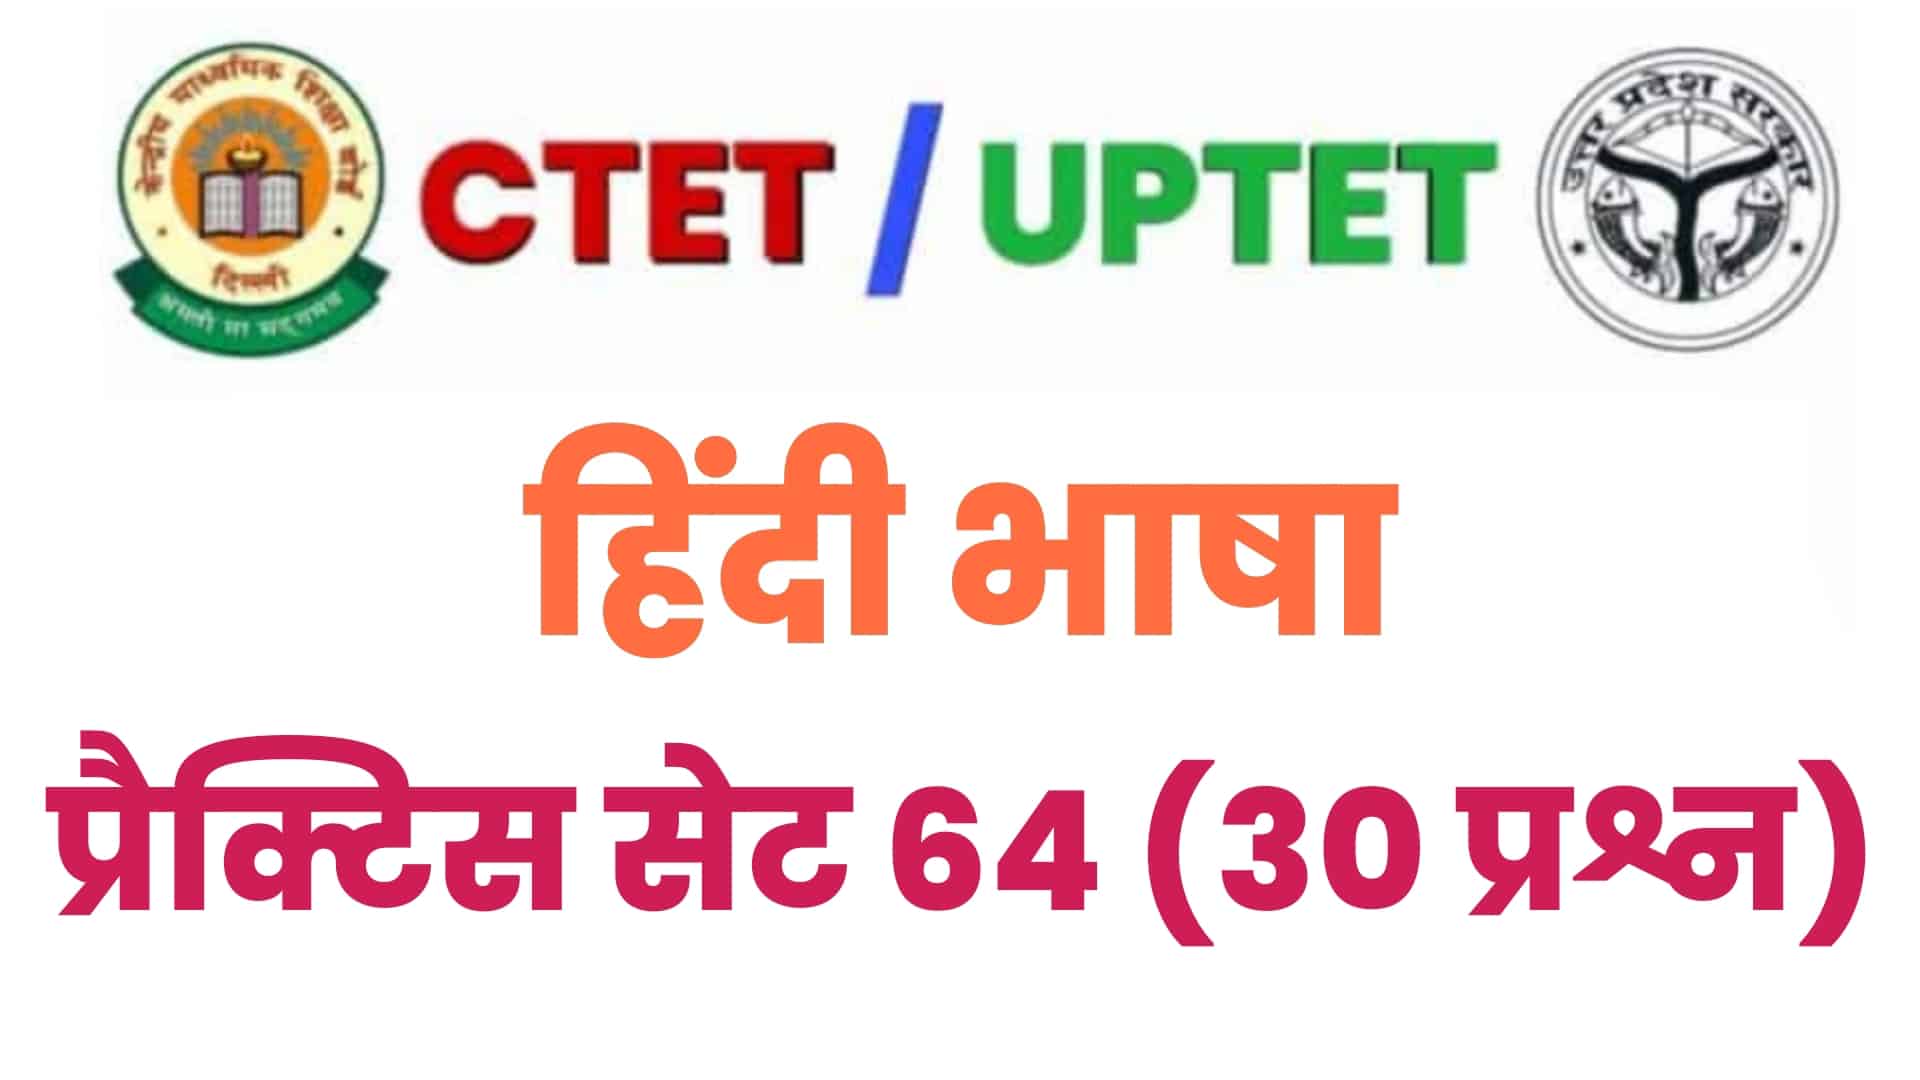 UPTET/CTET हिंदी भाषा प्रैक्टिस सेट 64 : विगत वर्षों के परीक्षा में पूछे गए इन 30 महत्वपूर्ण प्रश्नों पर डालें एक नज़र